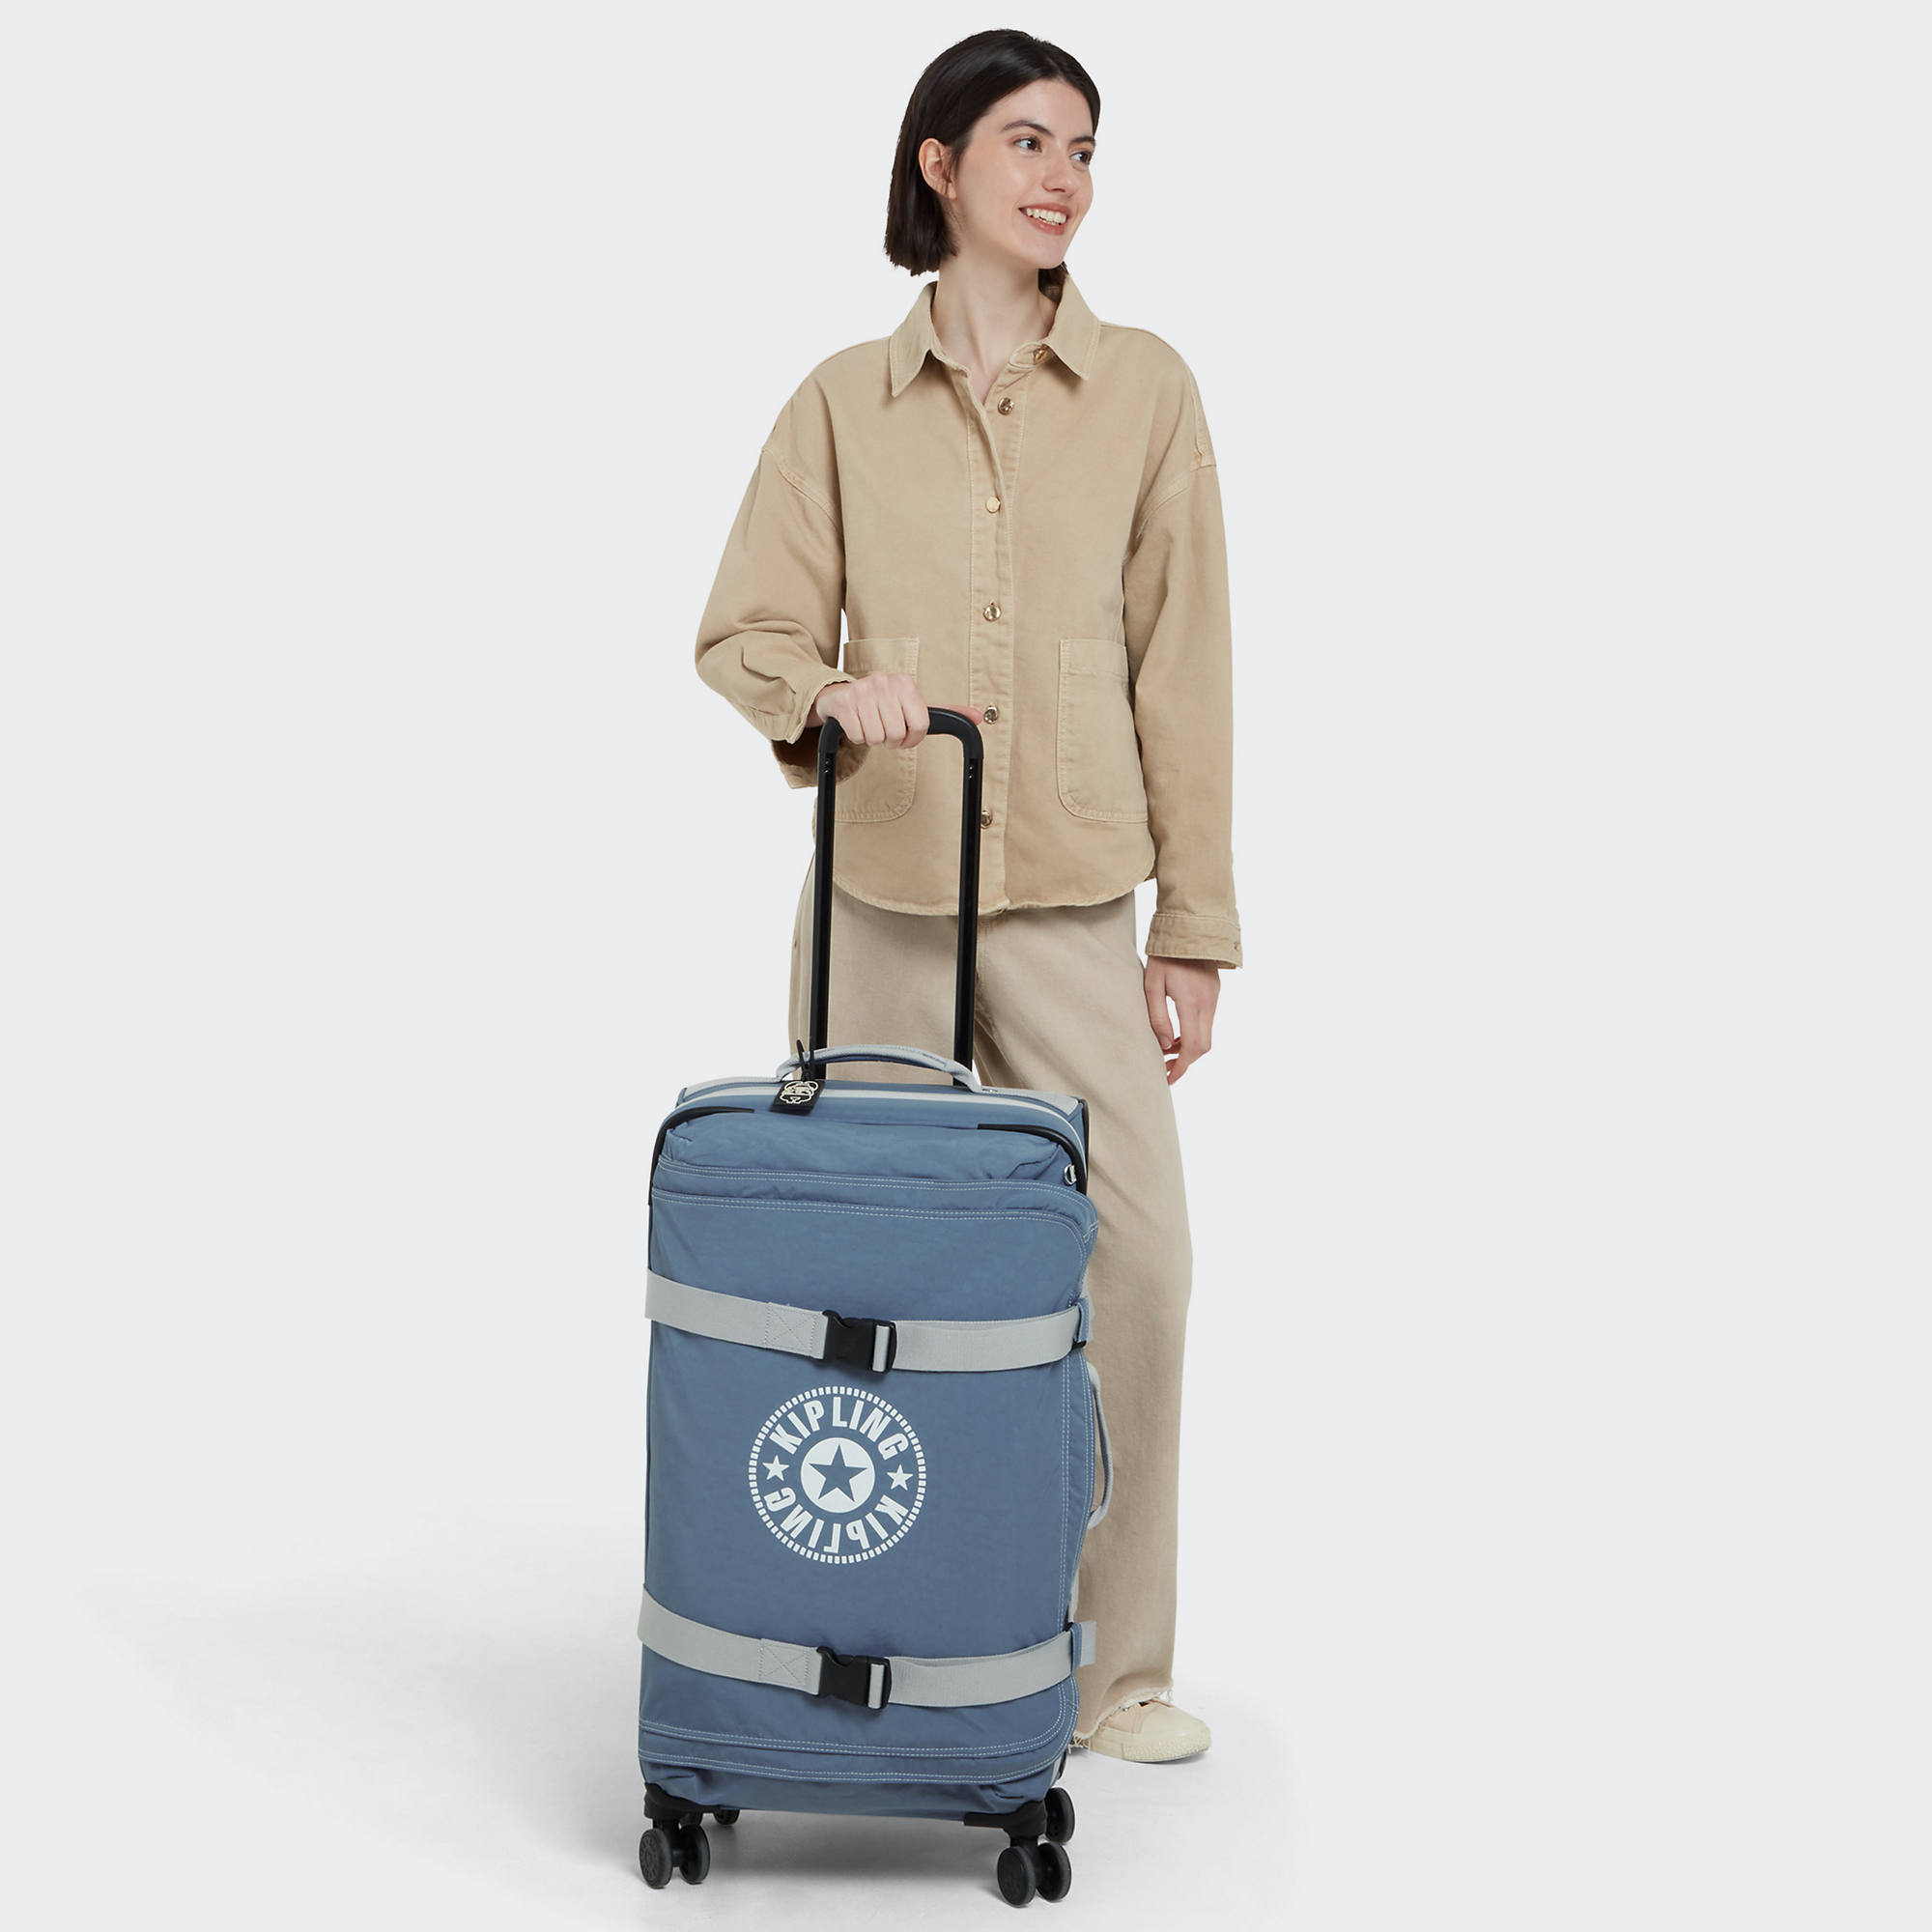 Ongeëvenaard Tegenwerken Aardewerk Kipling Spontaneous Medium Rolling Luggage | eBay